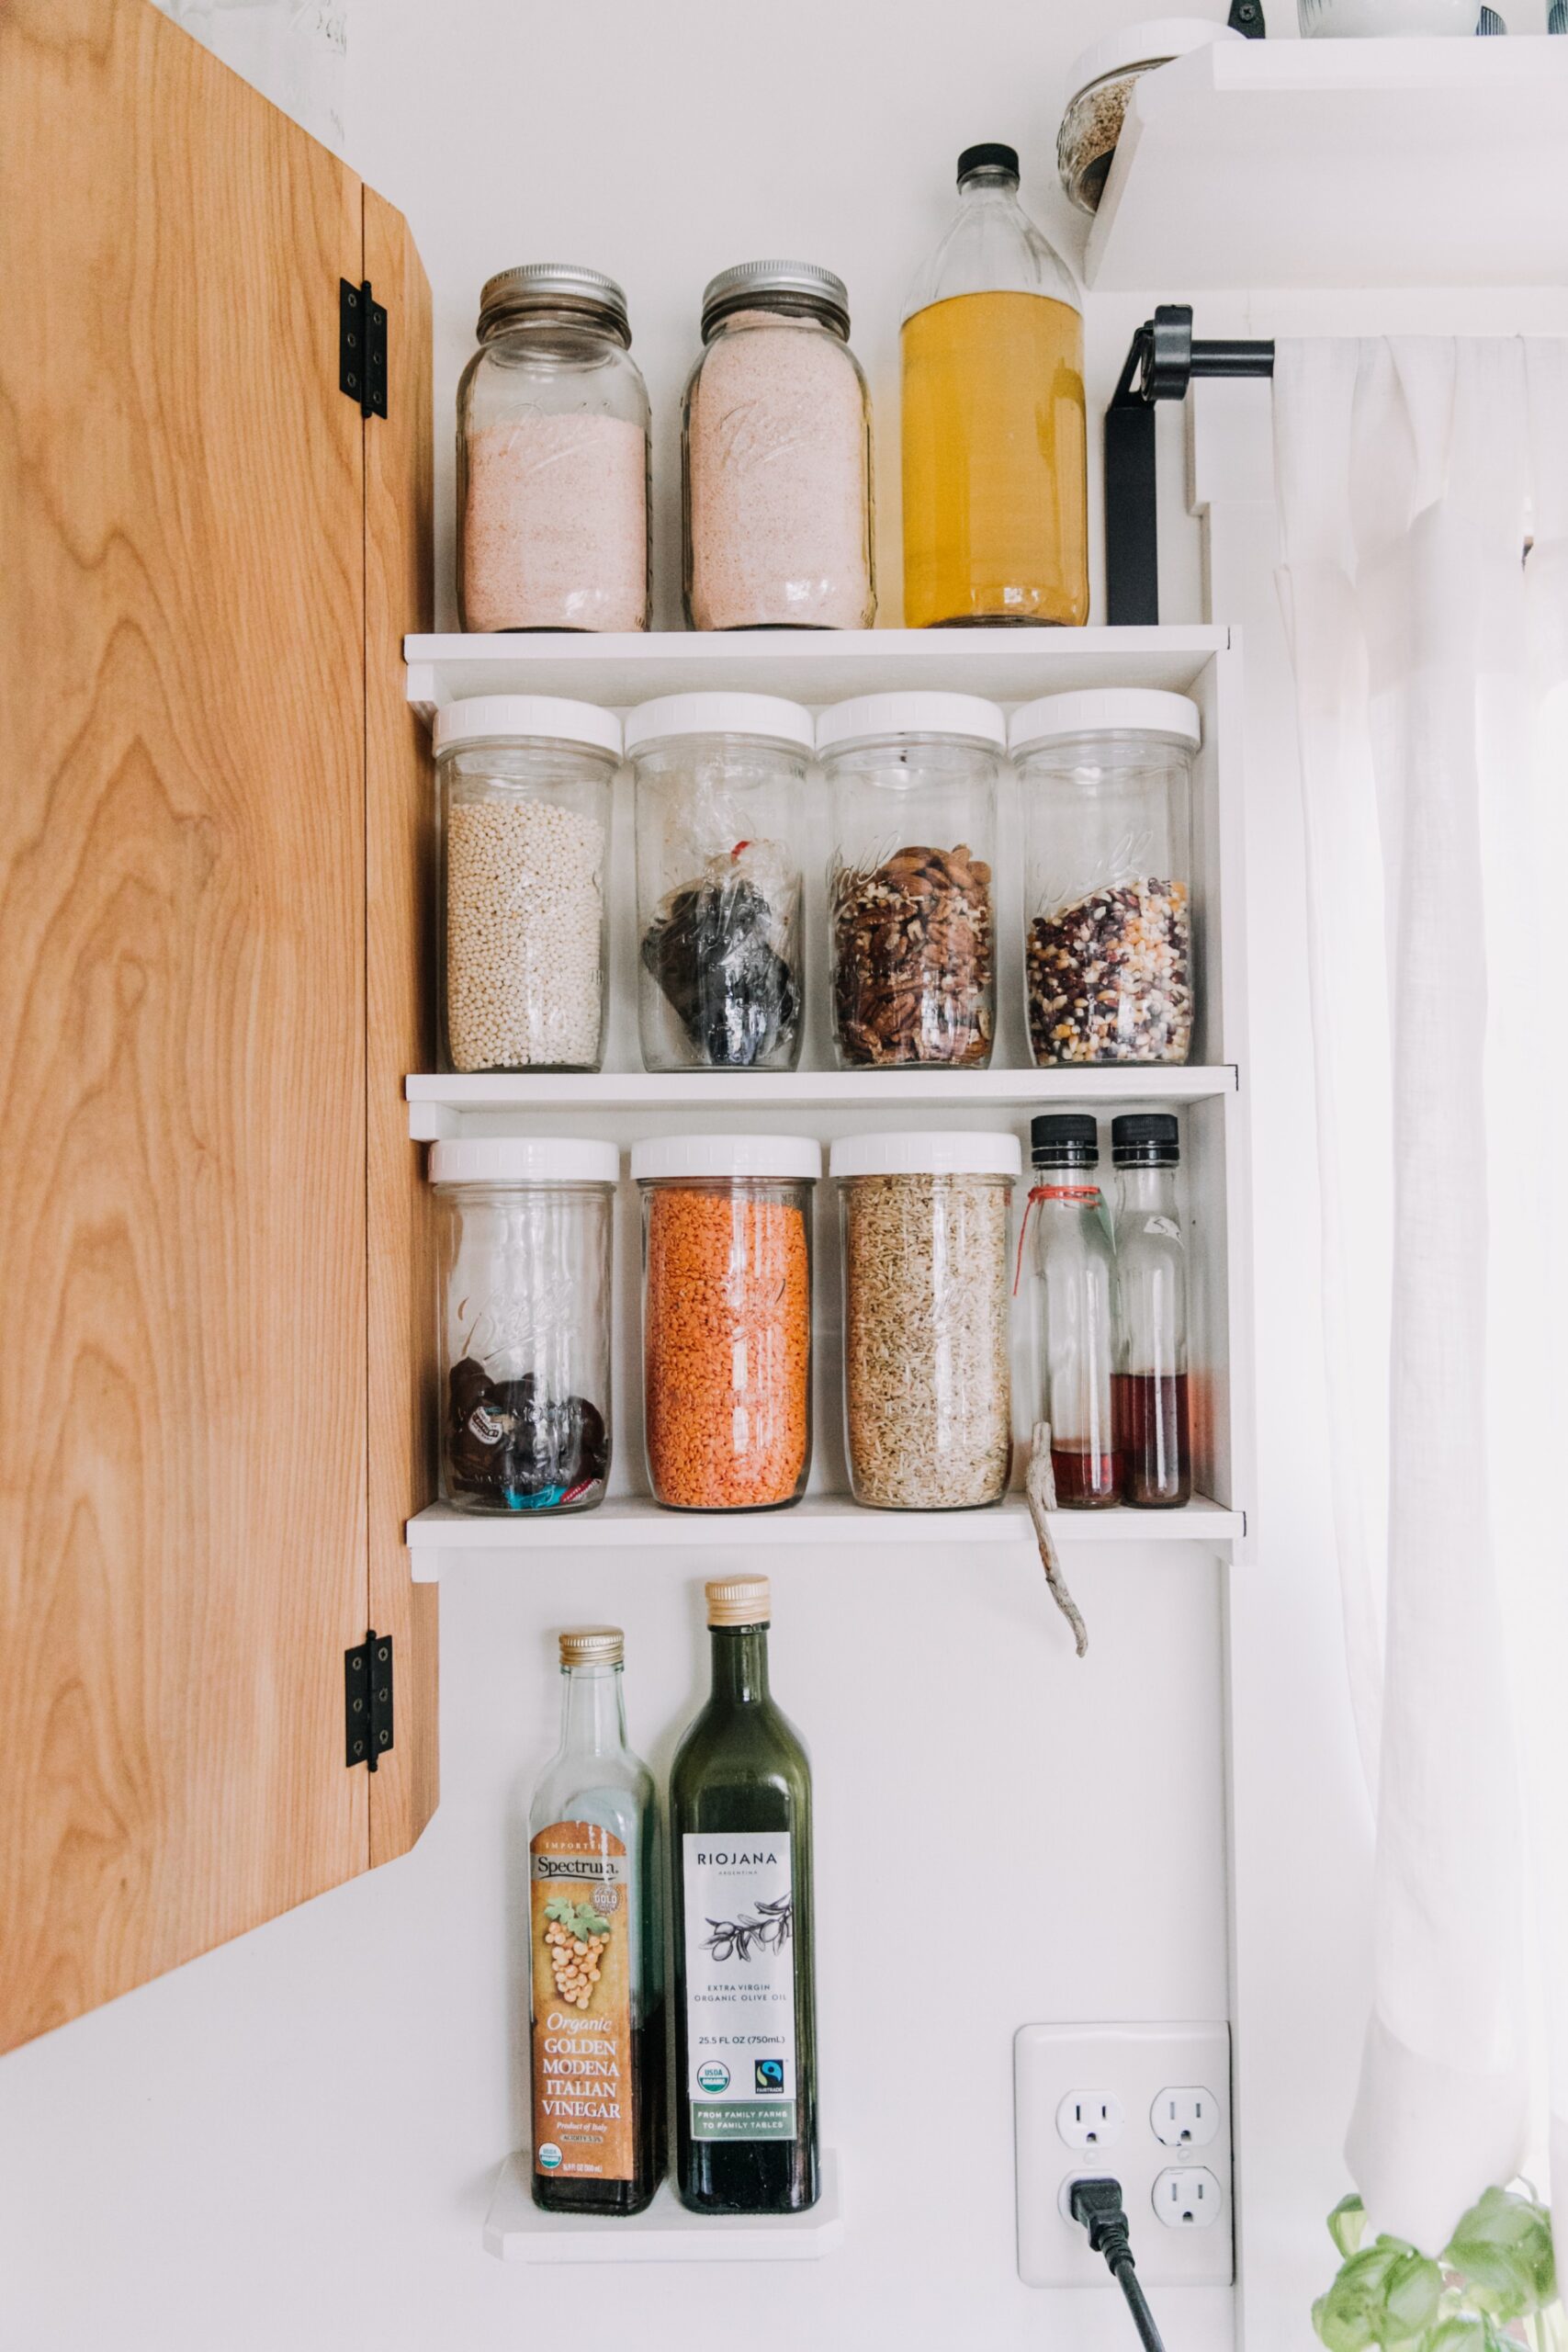 7 Best Small Kitchen Storage & Design Ideas  Kitchn - small kitchen storage ideas